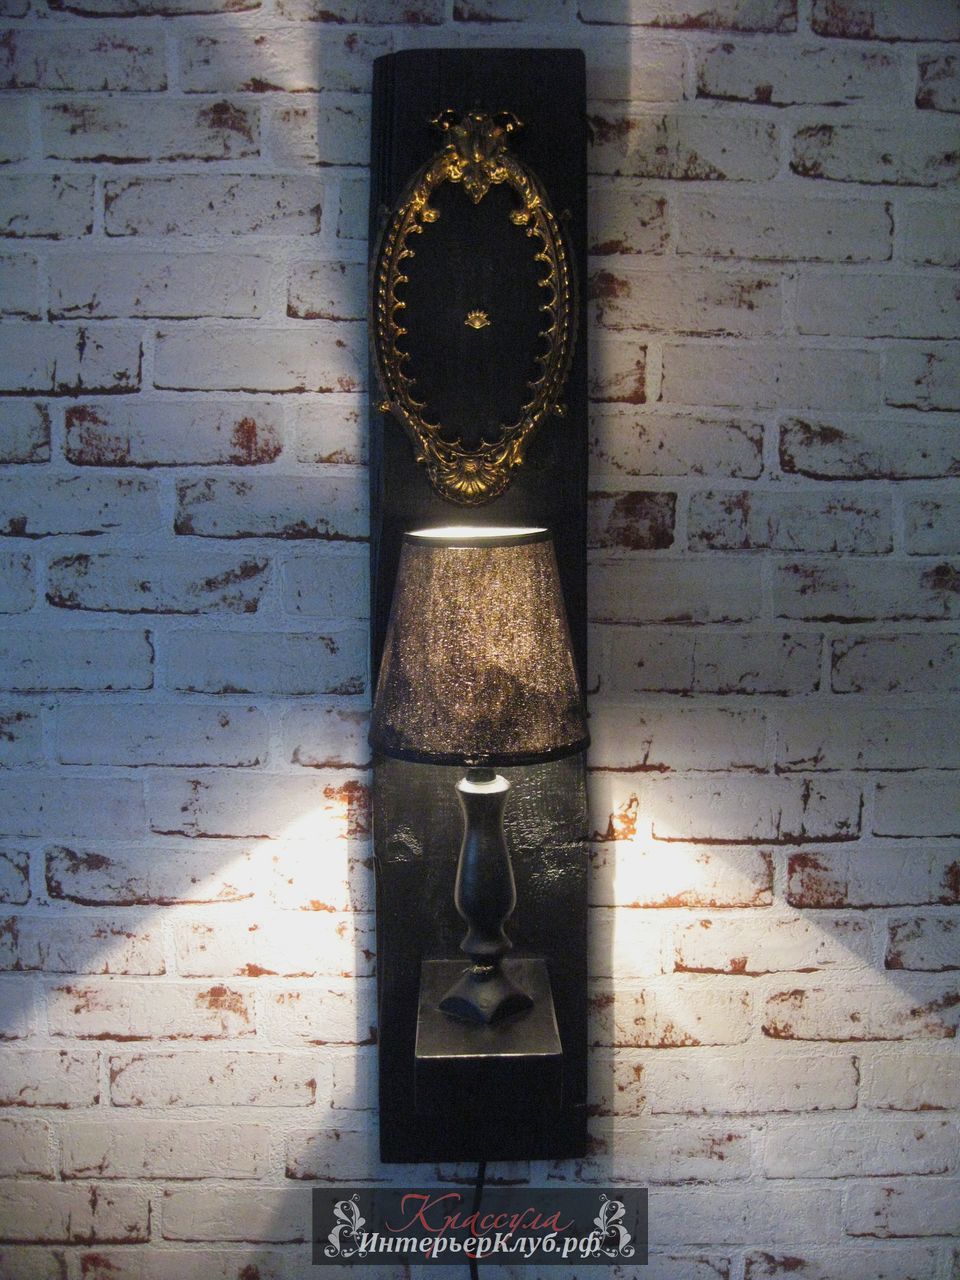 14 Светильник Око - амбарная доска, с элементами декора, цвет черный - золото. Эксклюзивные светильники ручной работы